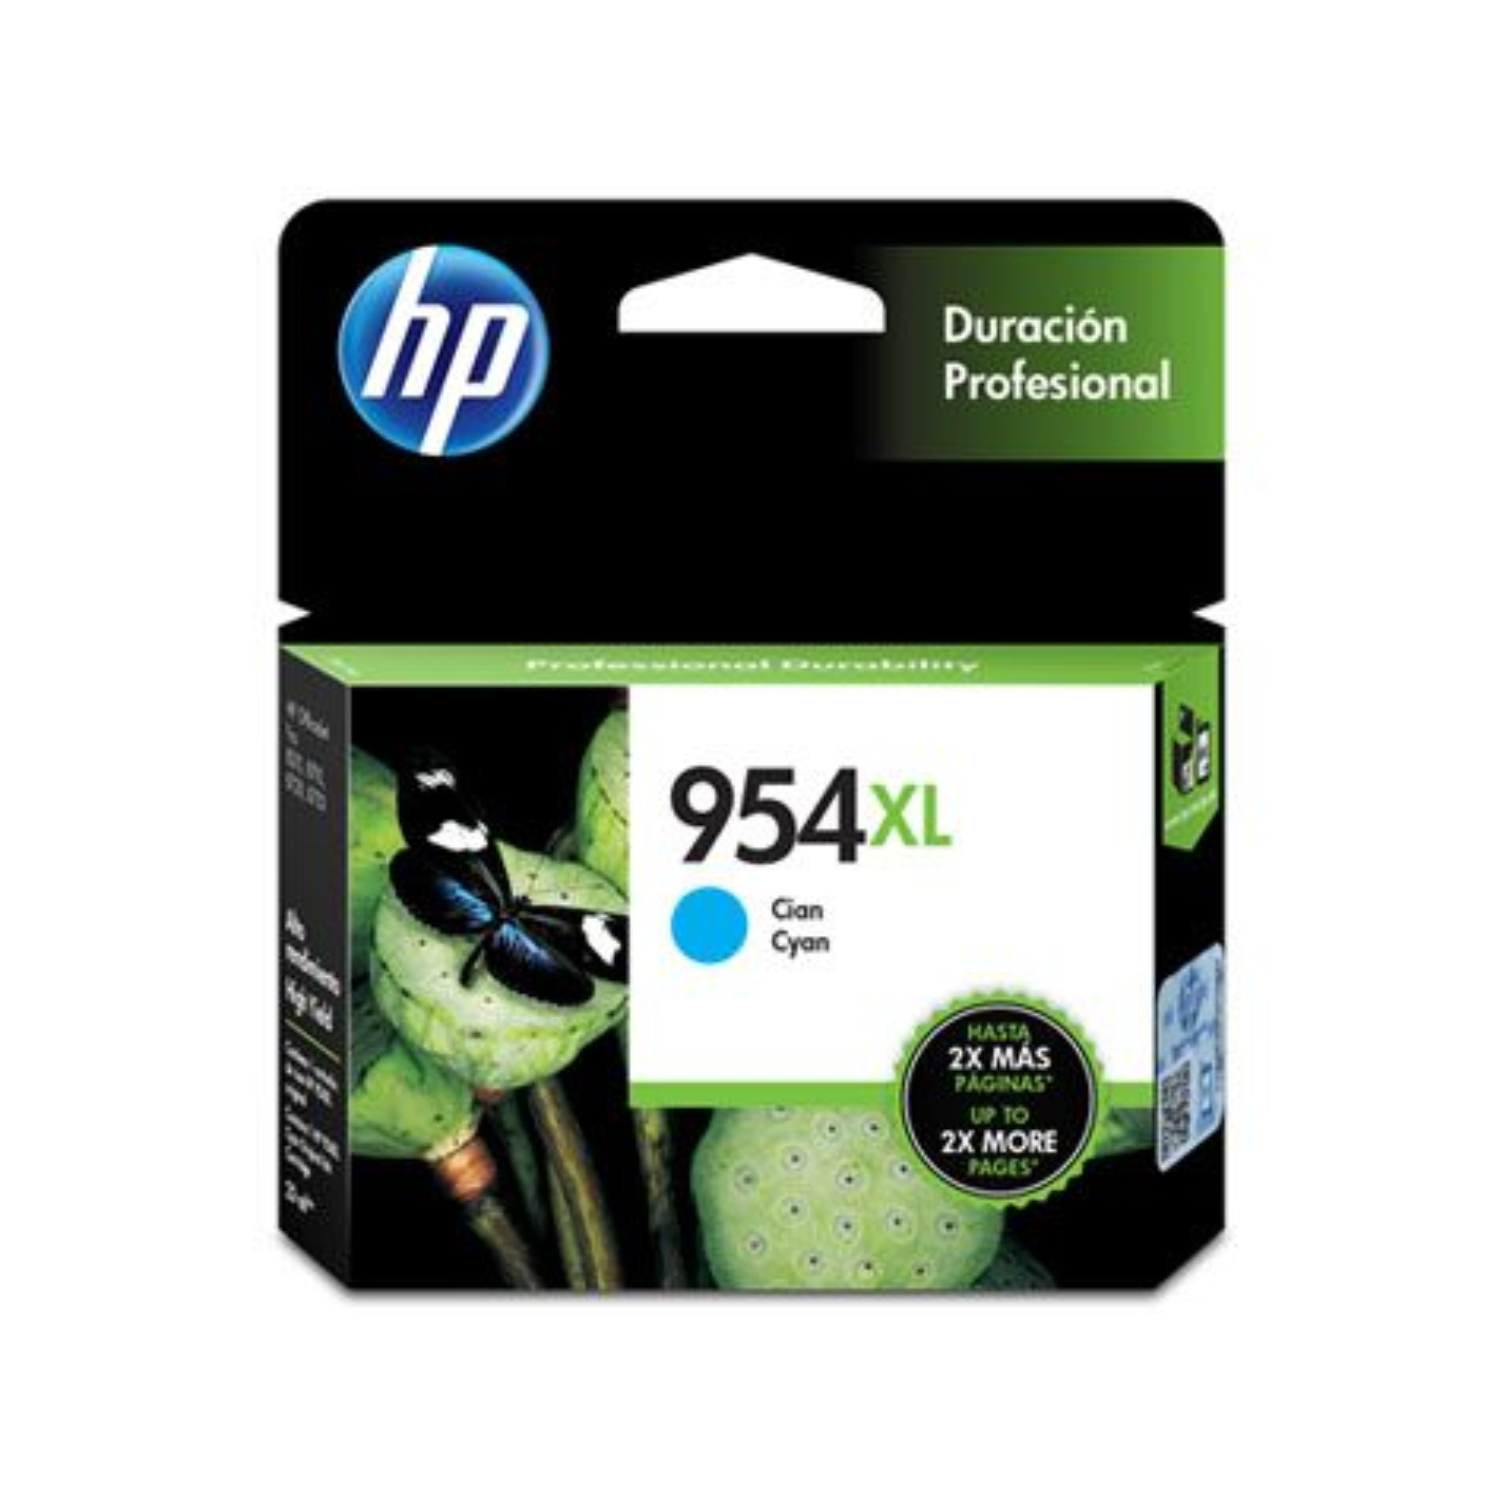 Cartucho de tinta HP 954XL Cian (L0S62AL) OfficeJet 8710 1600 Pag.